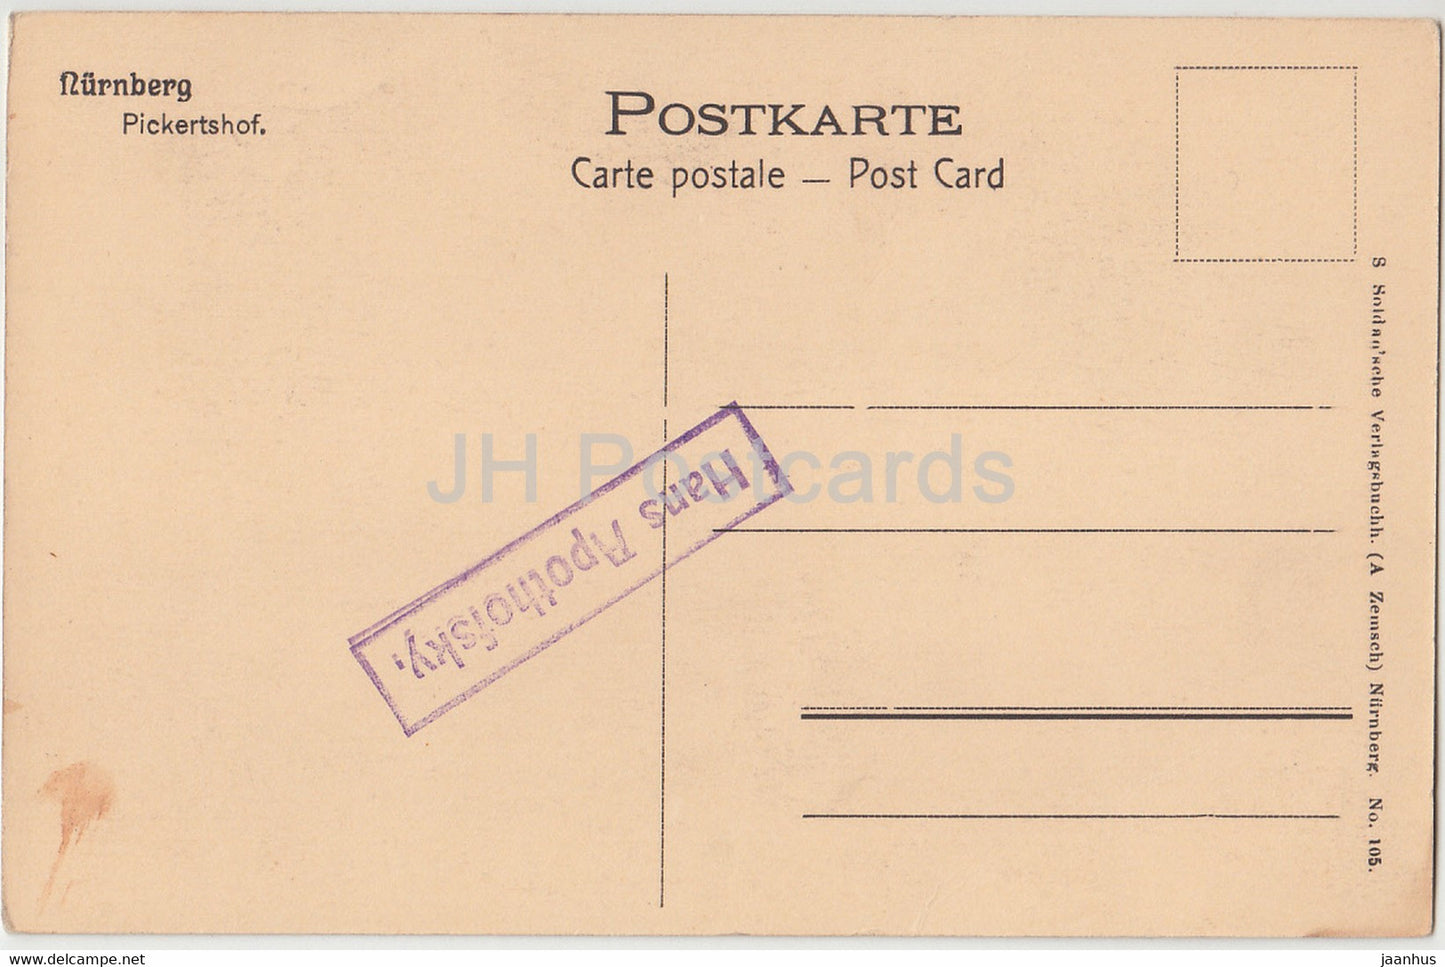 Nurnberg - Pickertshof - old postcard - Germany - unused